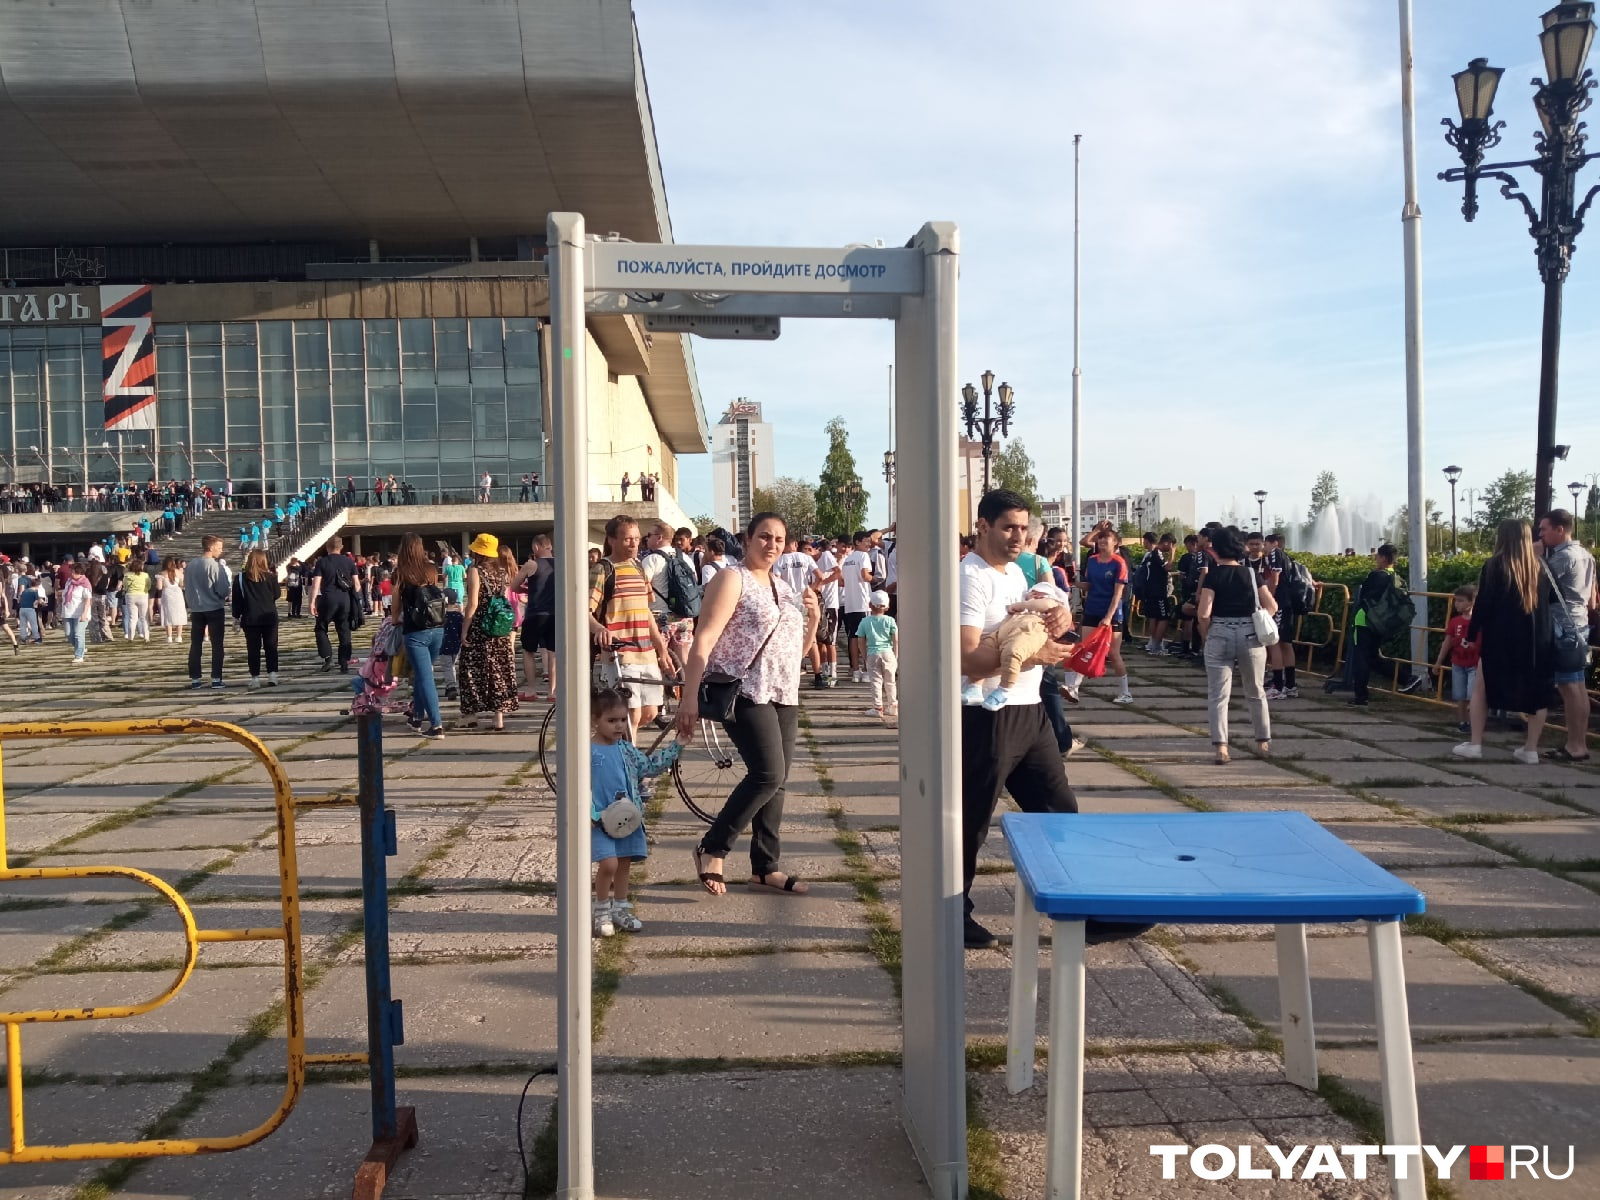 Люди входили на площадь к «Волгарю» через пост полиции с металлоискателем, полиция присматривала за порядком